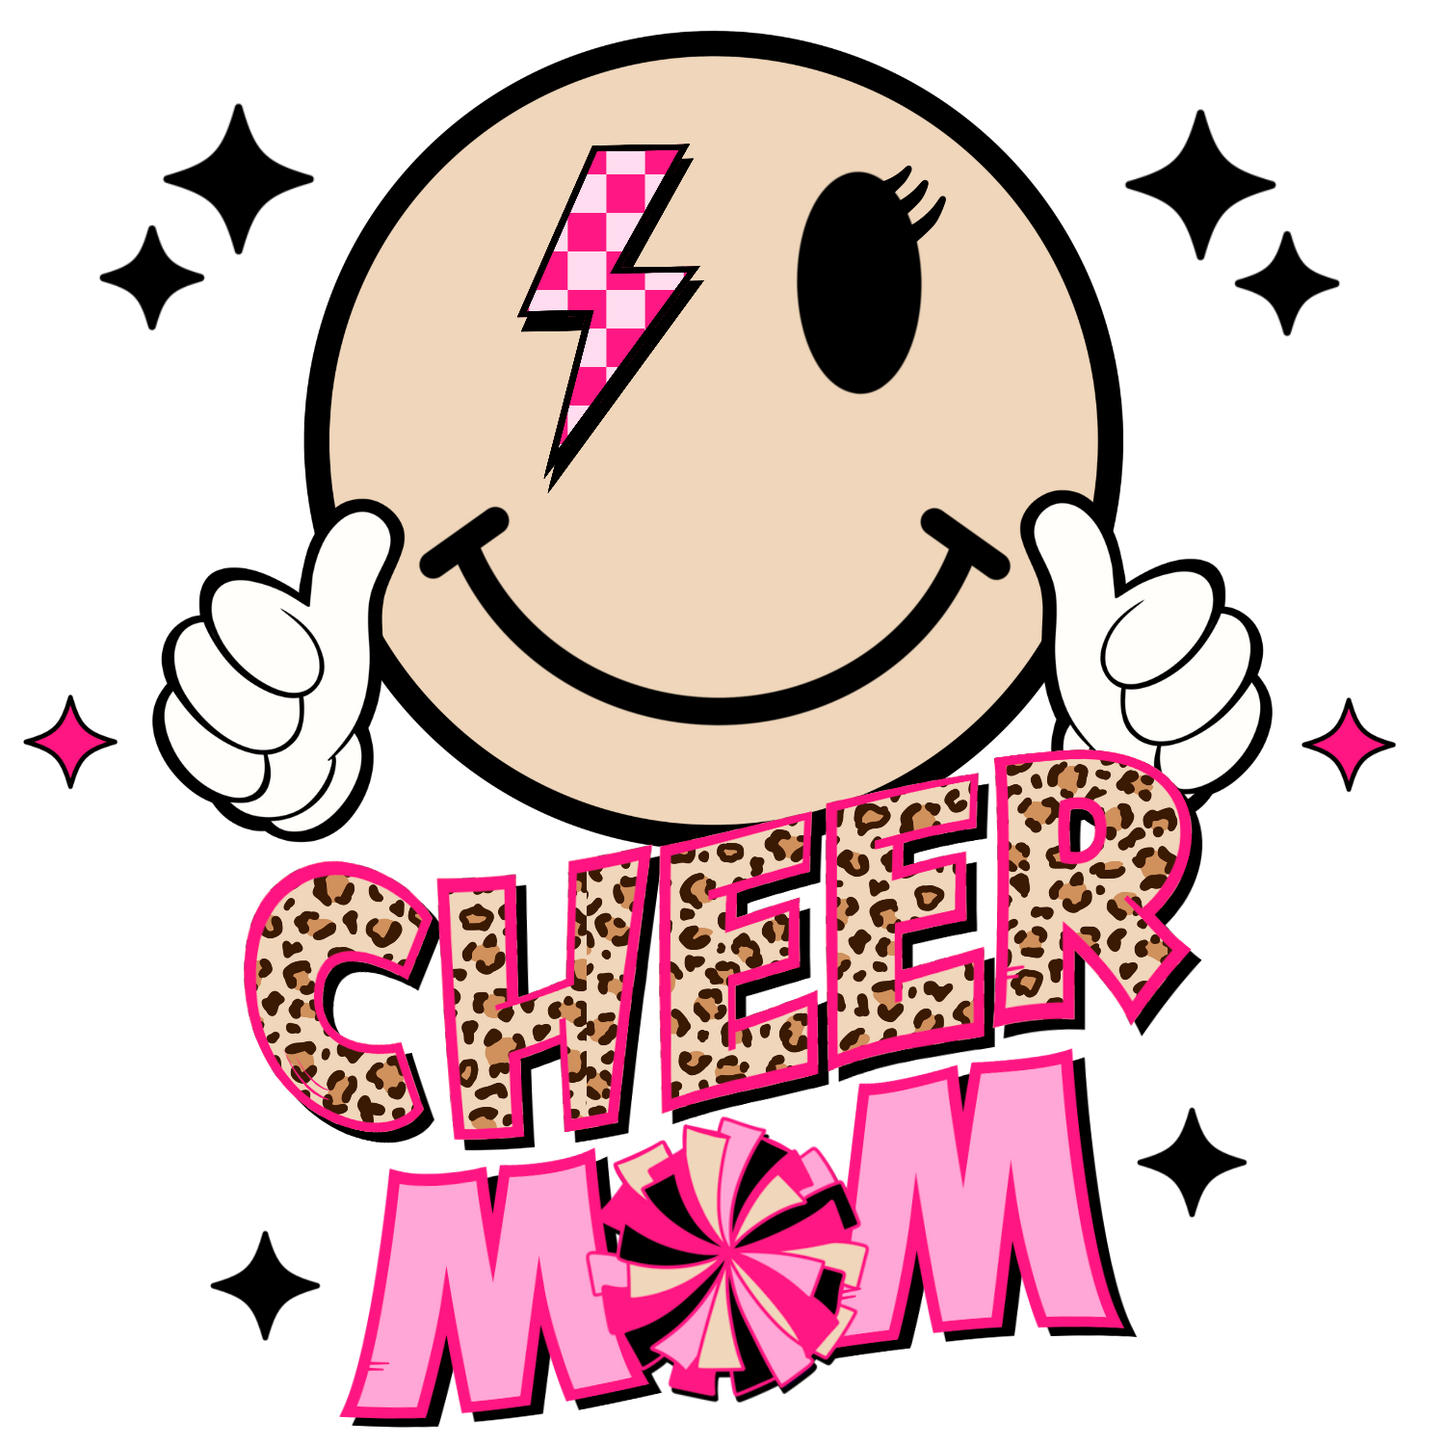 Cheer mom dtf transfer set